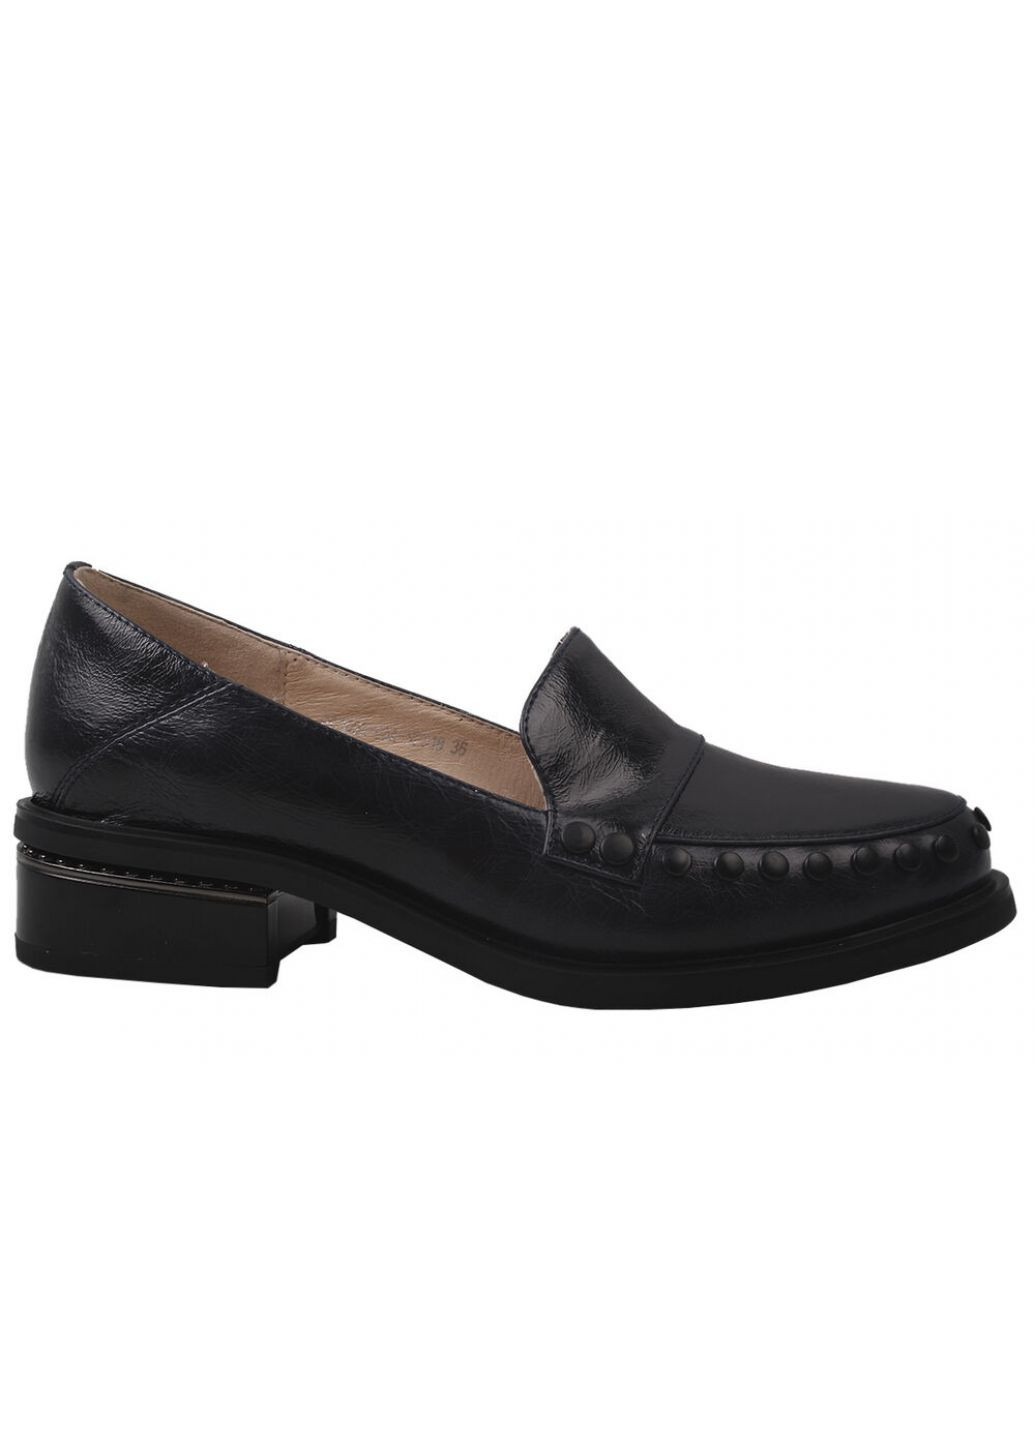 Туфлі жіночі з натуральної шкіри, на низькому ходу, чорні, Brocoly 266-9dtc (257420065)